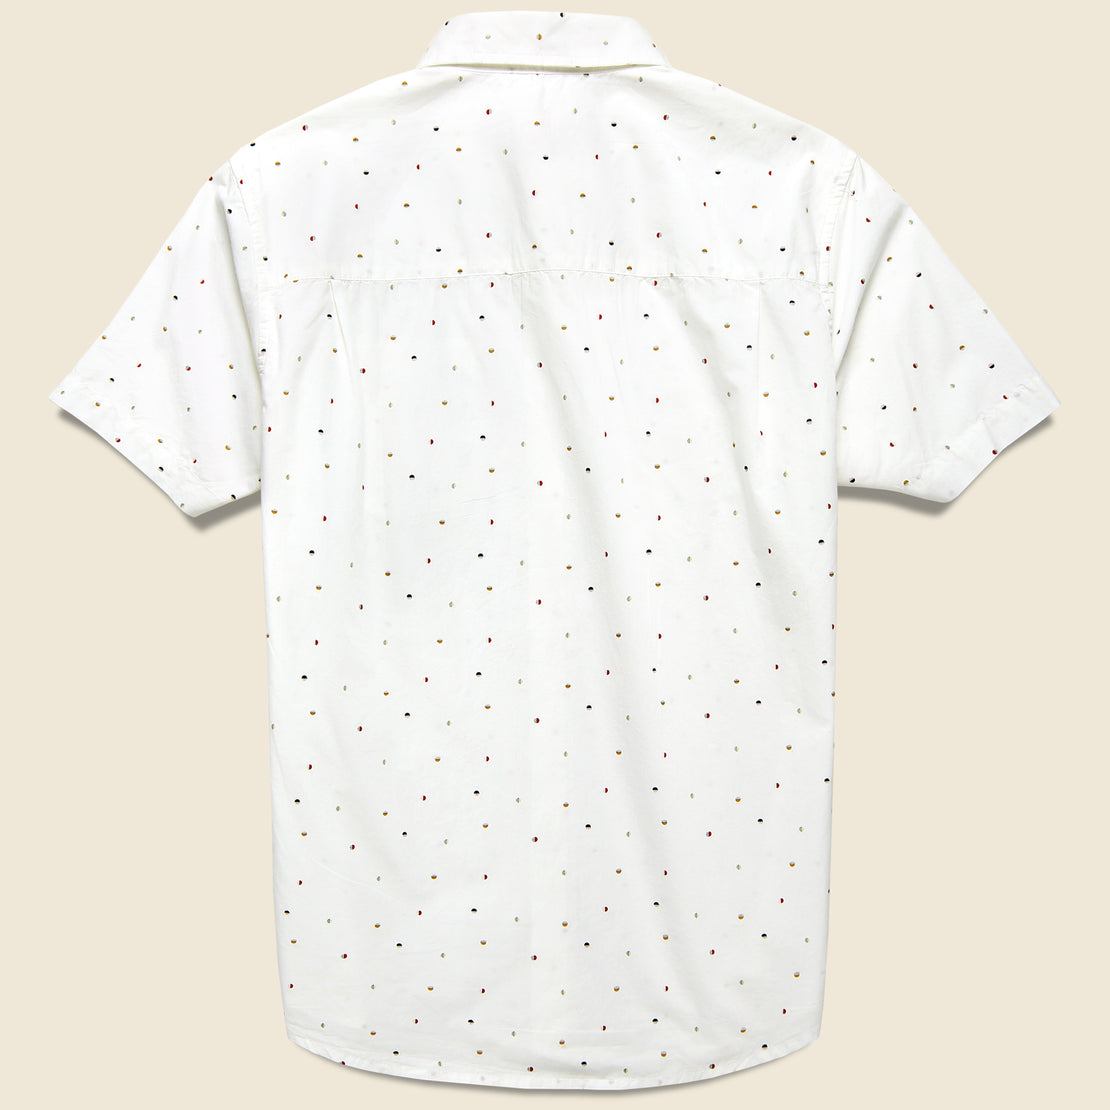 Jordan Shirt - Dots